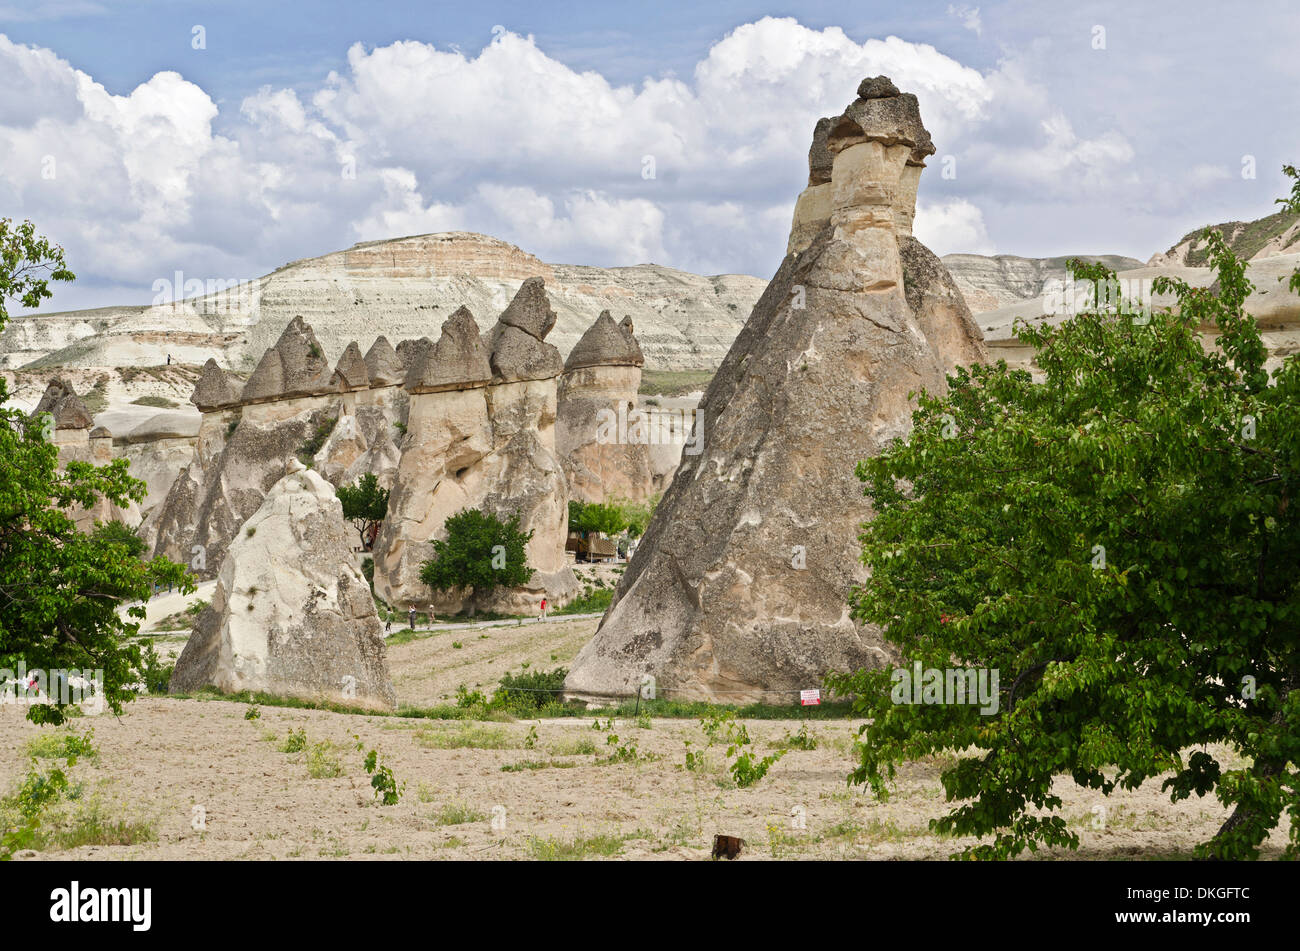 Feenkamine, Cappadocia, Anatolia, Turkey, Asia Stock Photo